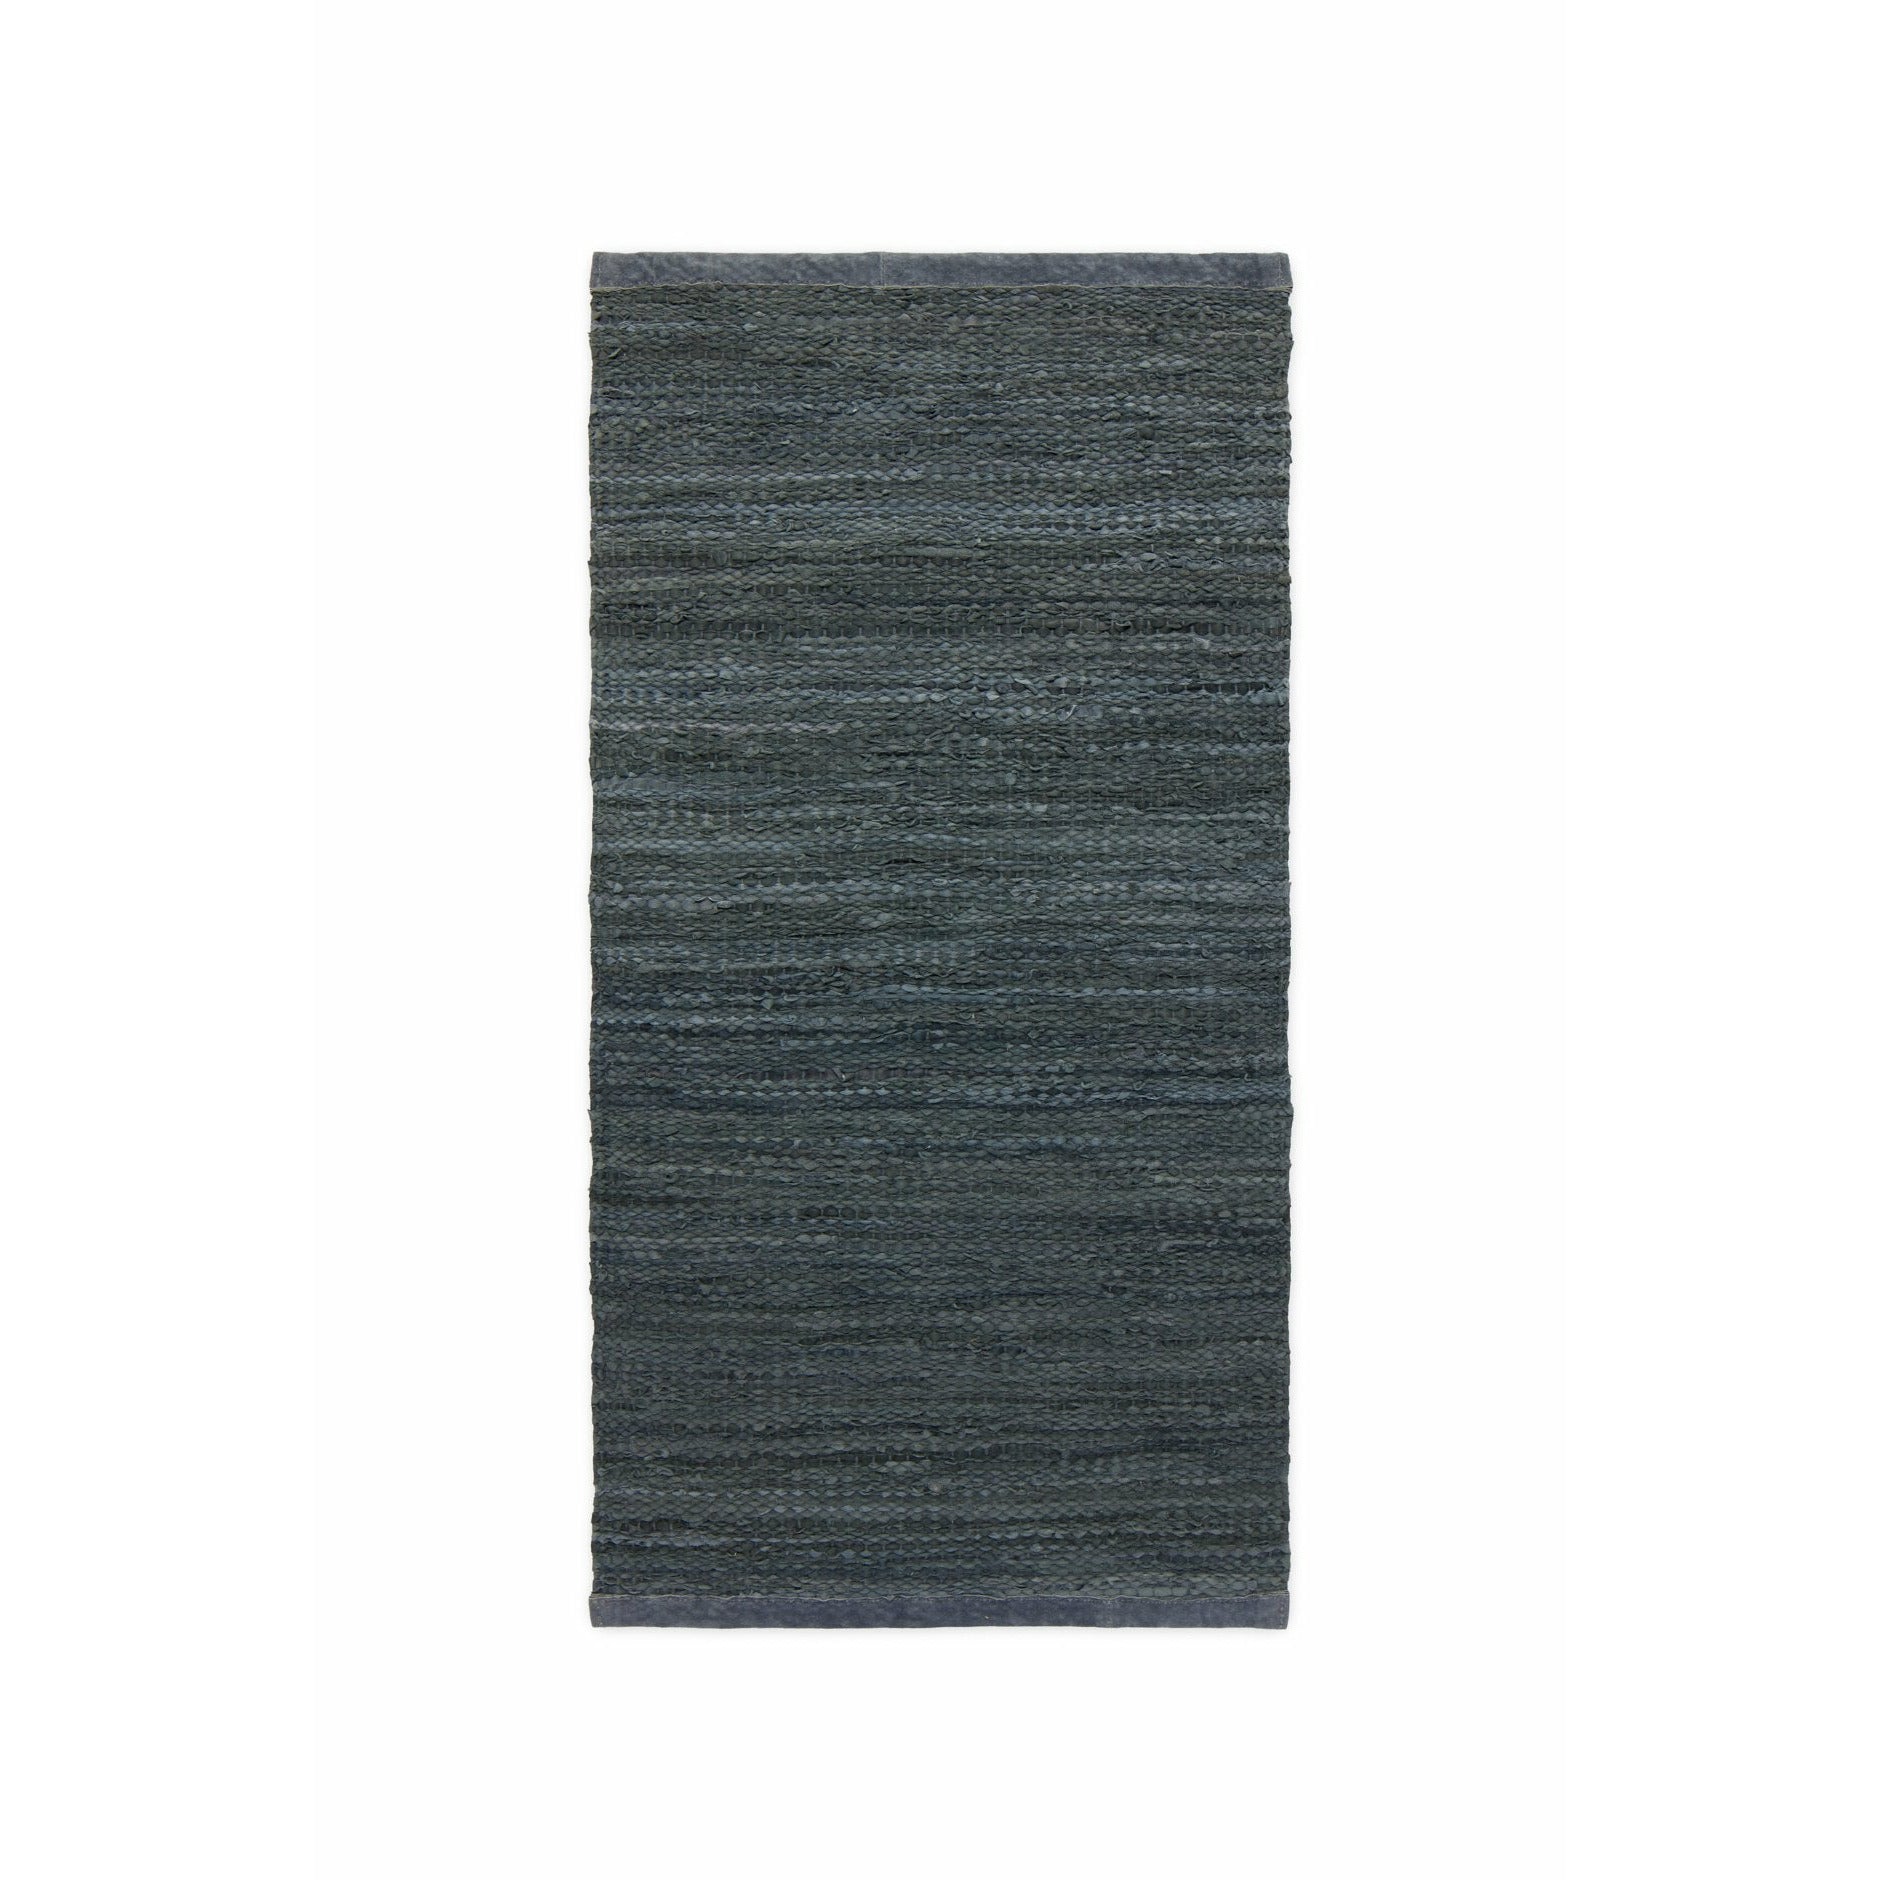 Tappeto in pelle solida grigio scuro, 75 x 500 cm